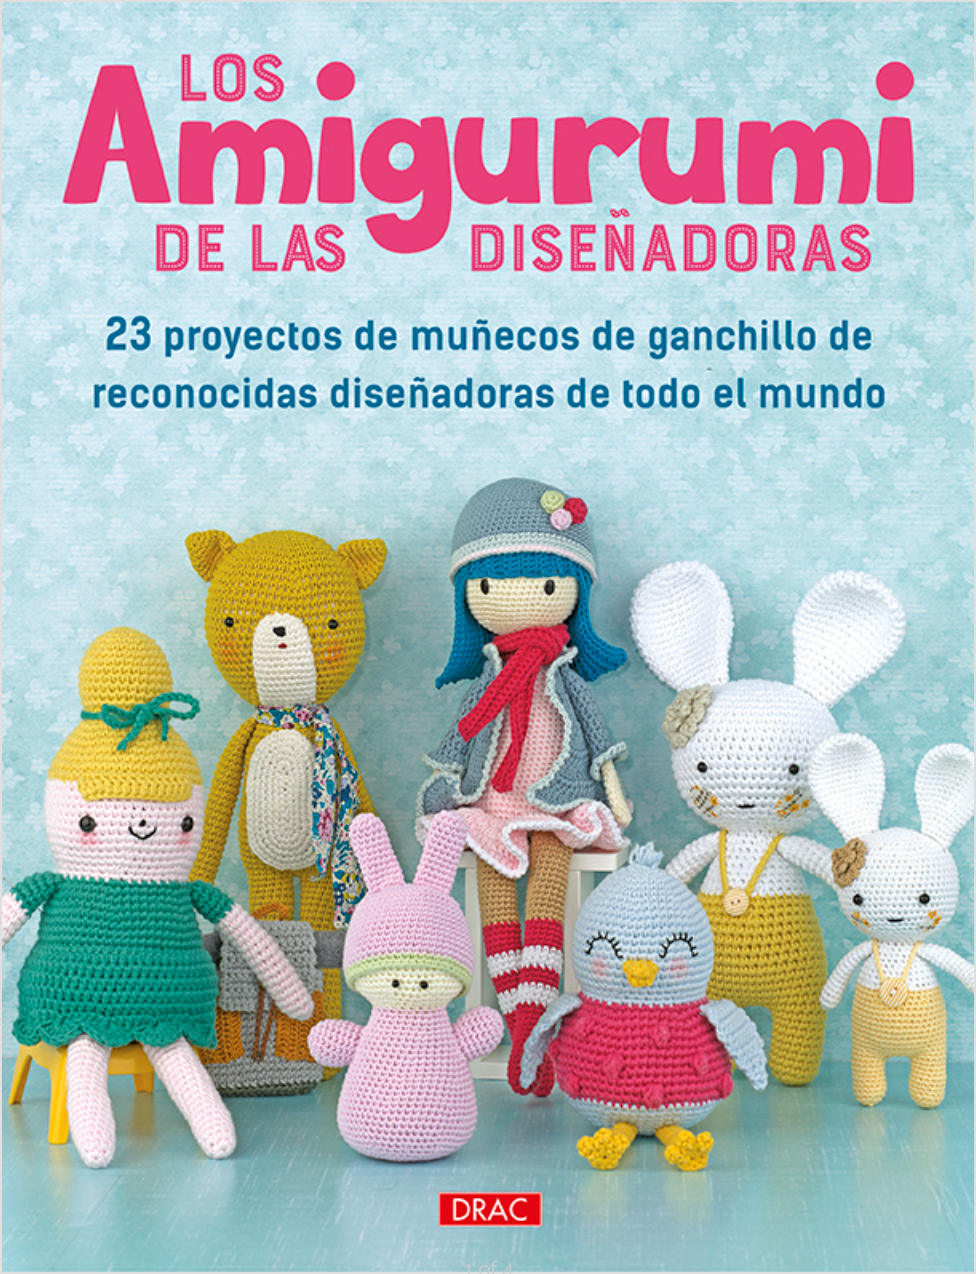 Angiegurumi Tejer Por Placer ^_^: Amigurumi Libros y revistas en español ^_^